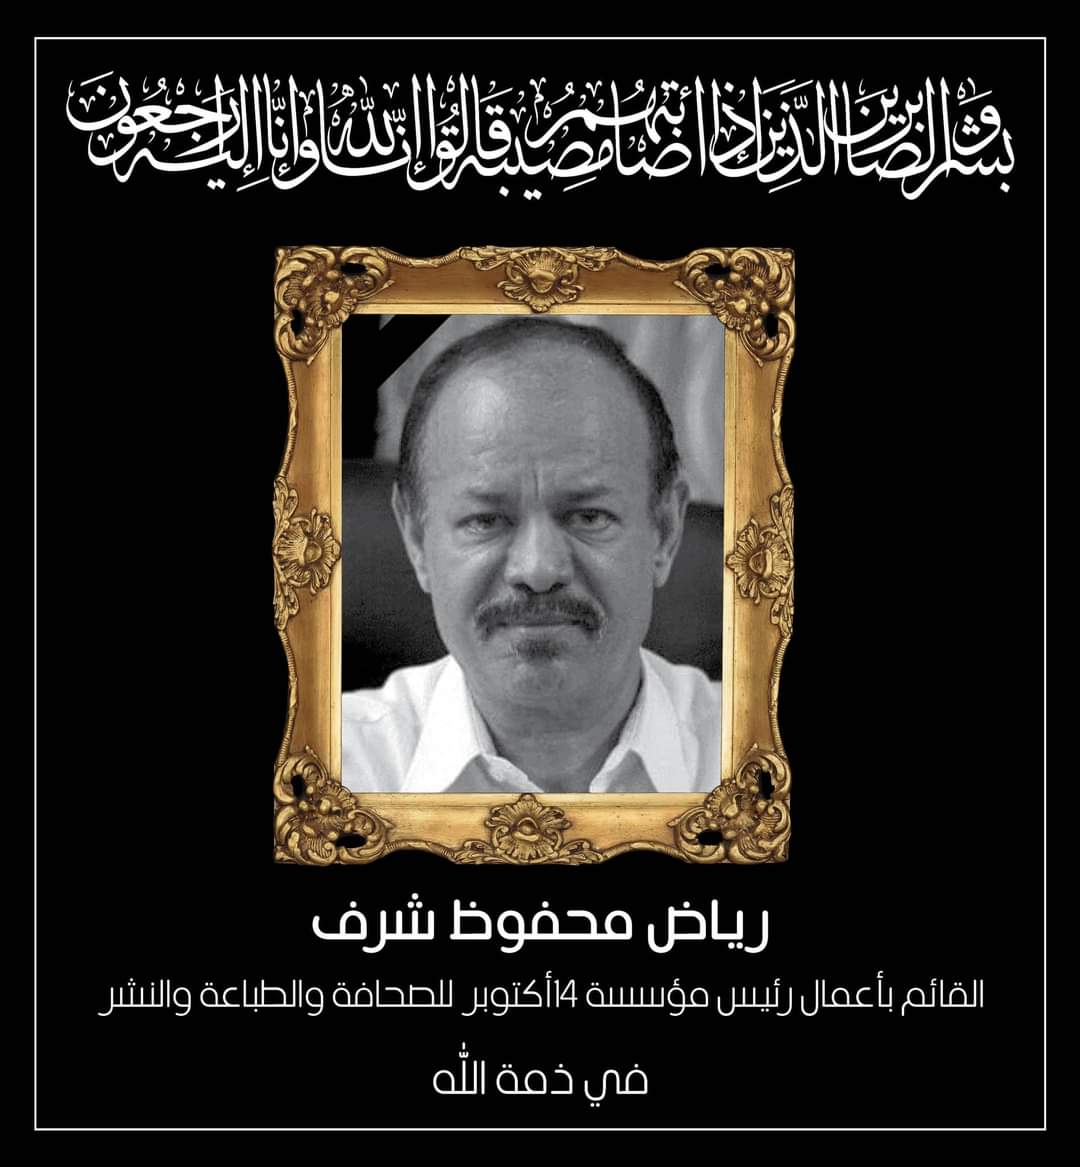 وزارة الإعلام اليمنية تصدر بيان نعي لرحيل الصحفي رياض محفوظ